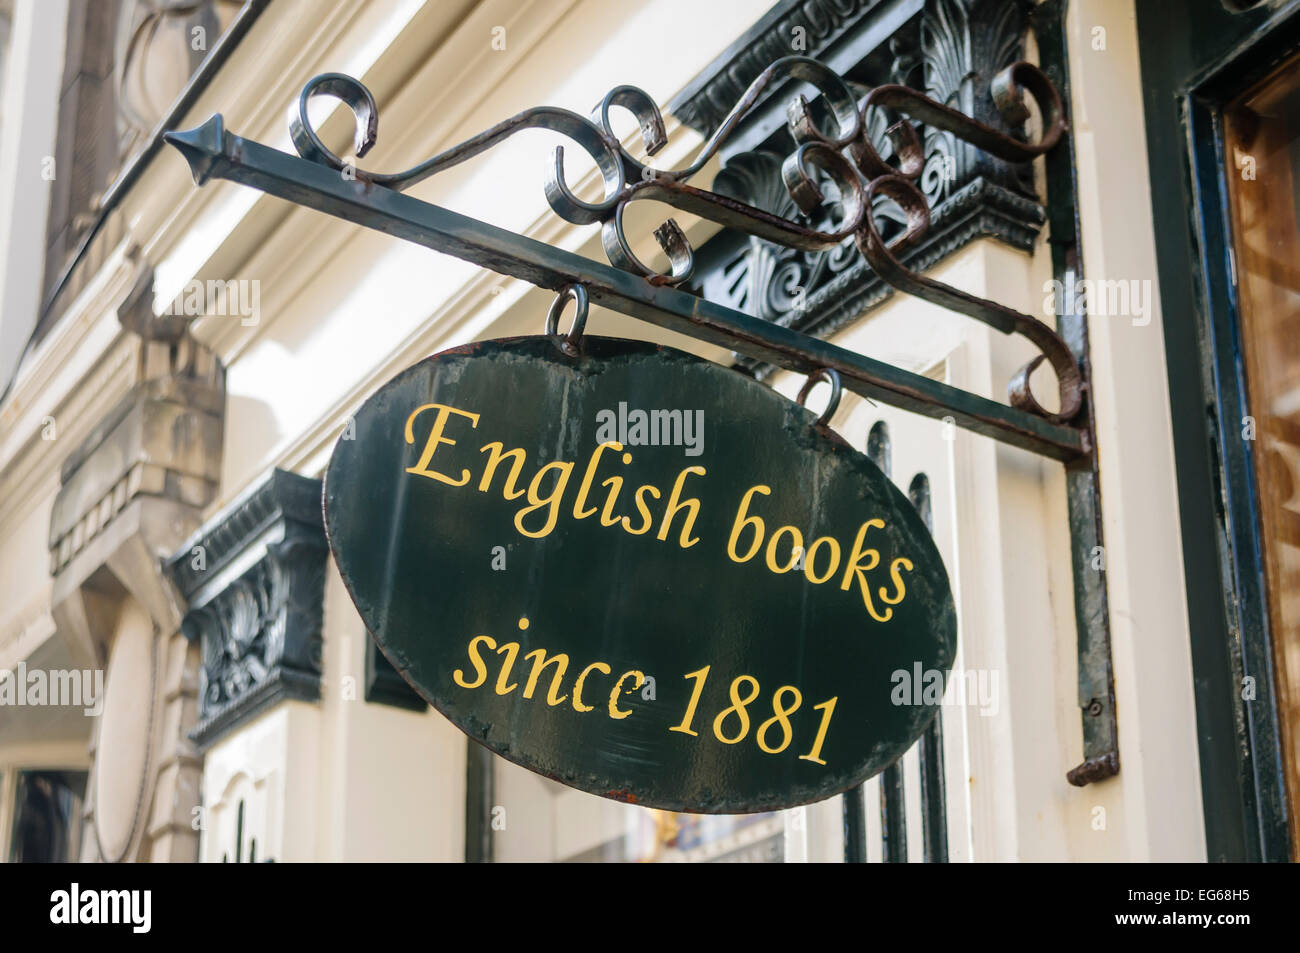 Segno pubblicità libri in inglese dal 1881 ad una libreria olandese, l'Aia. Foto Stock